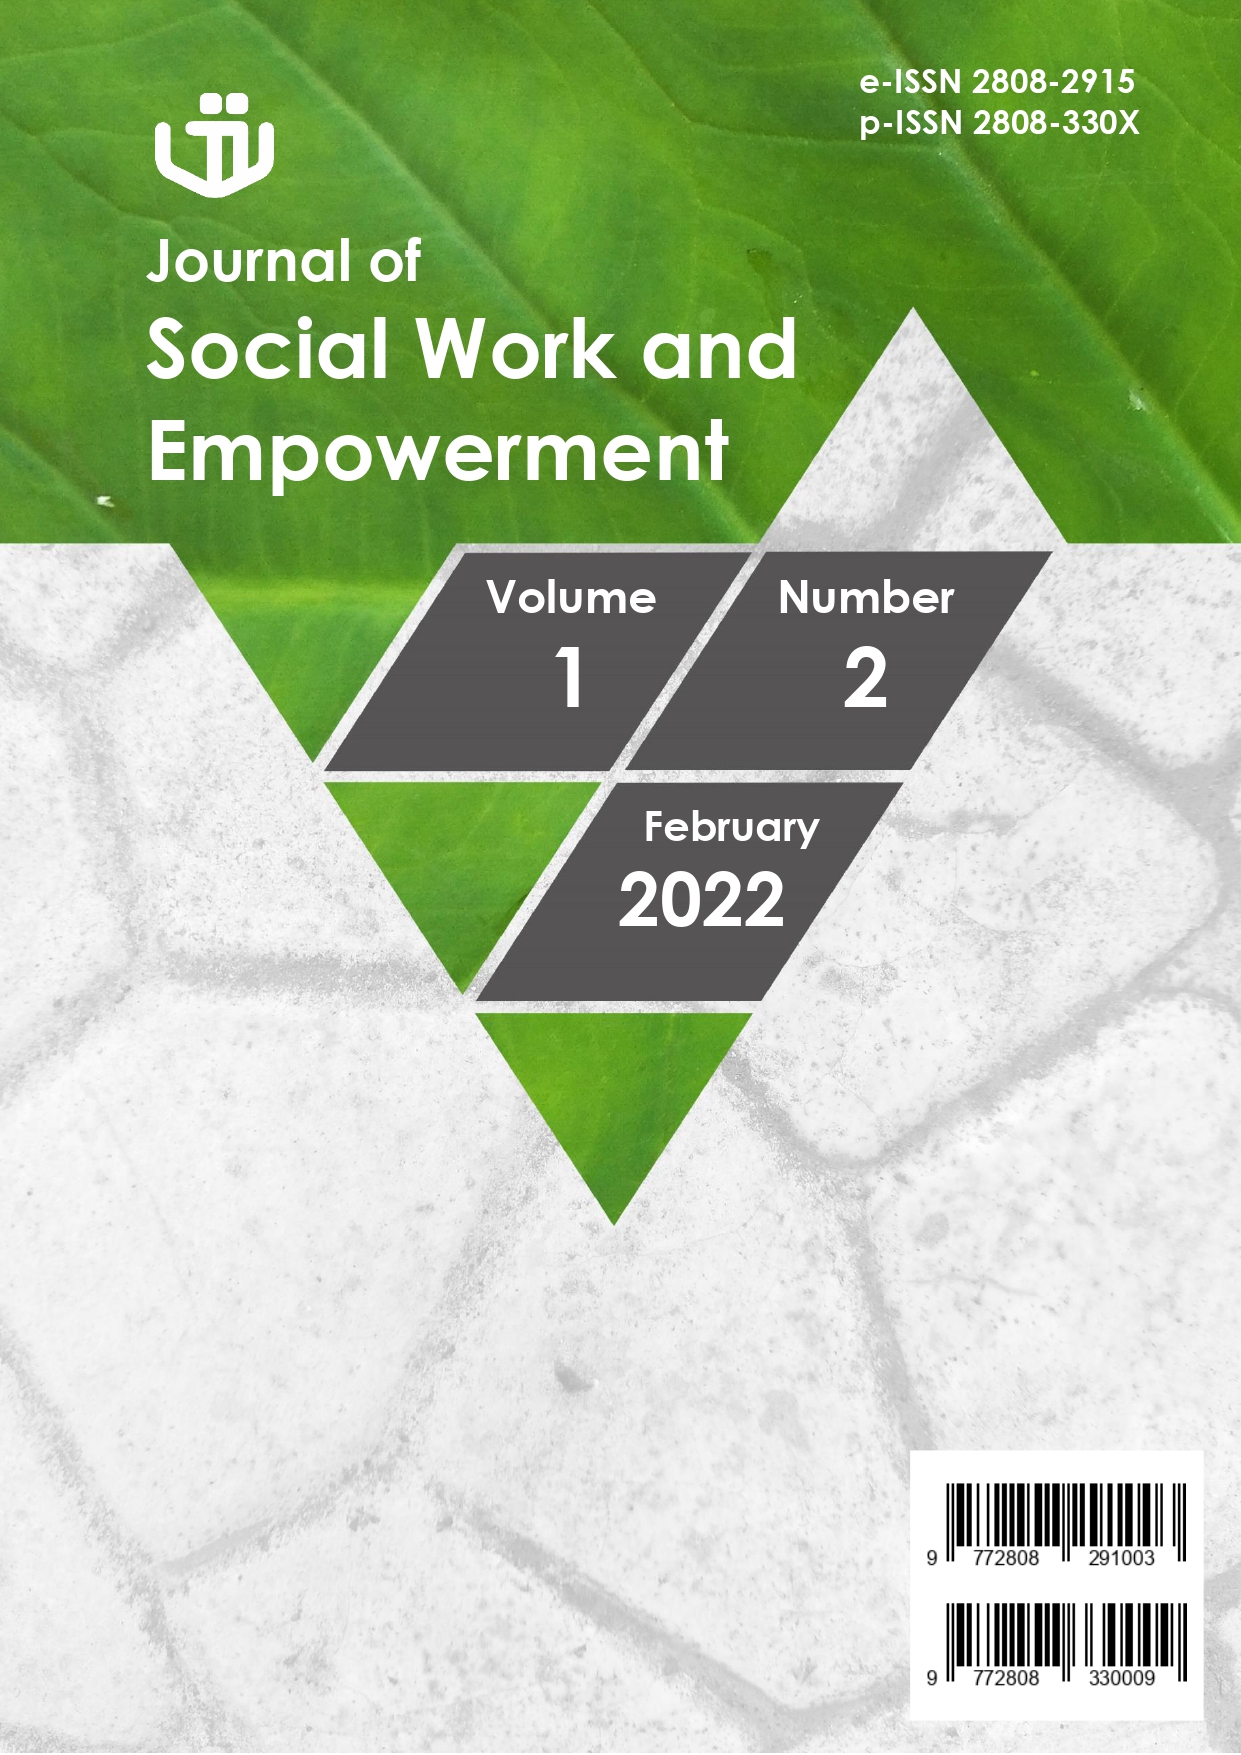 					Lihat Vol 1 No 2 (2022): Journal of Social Work and Empowerment - Februari 2022
				